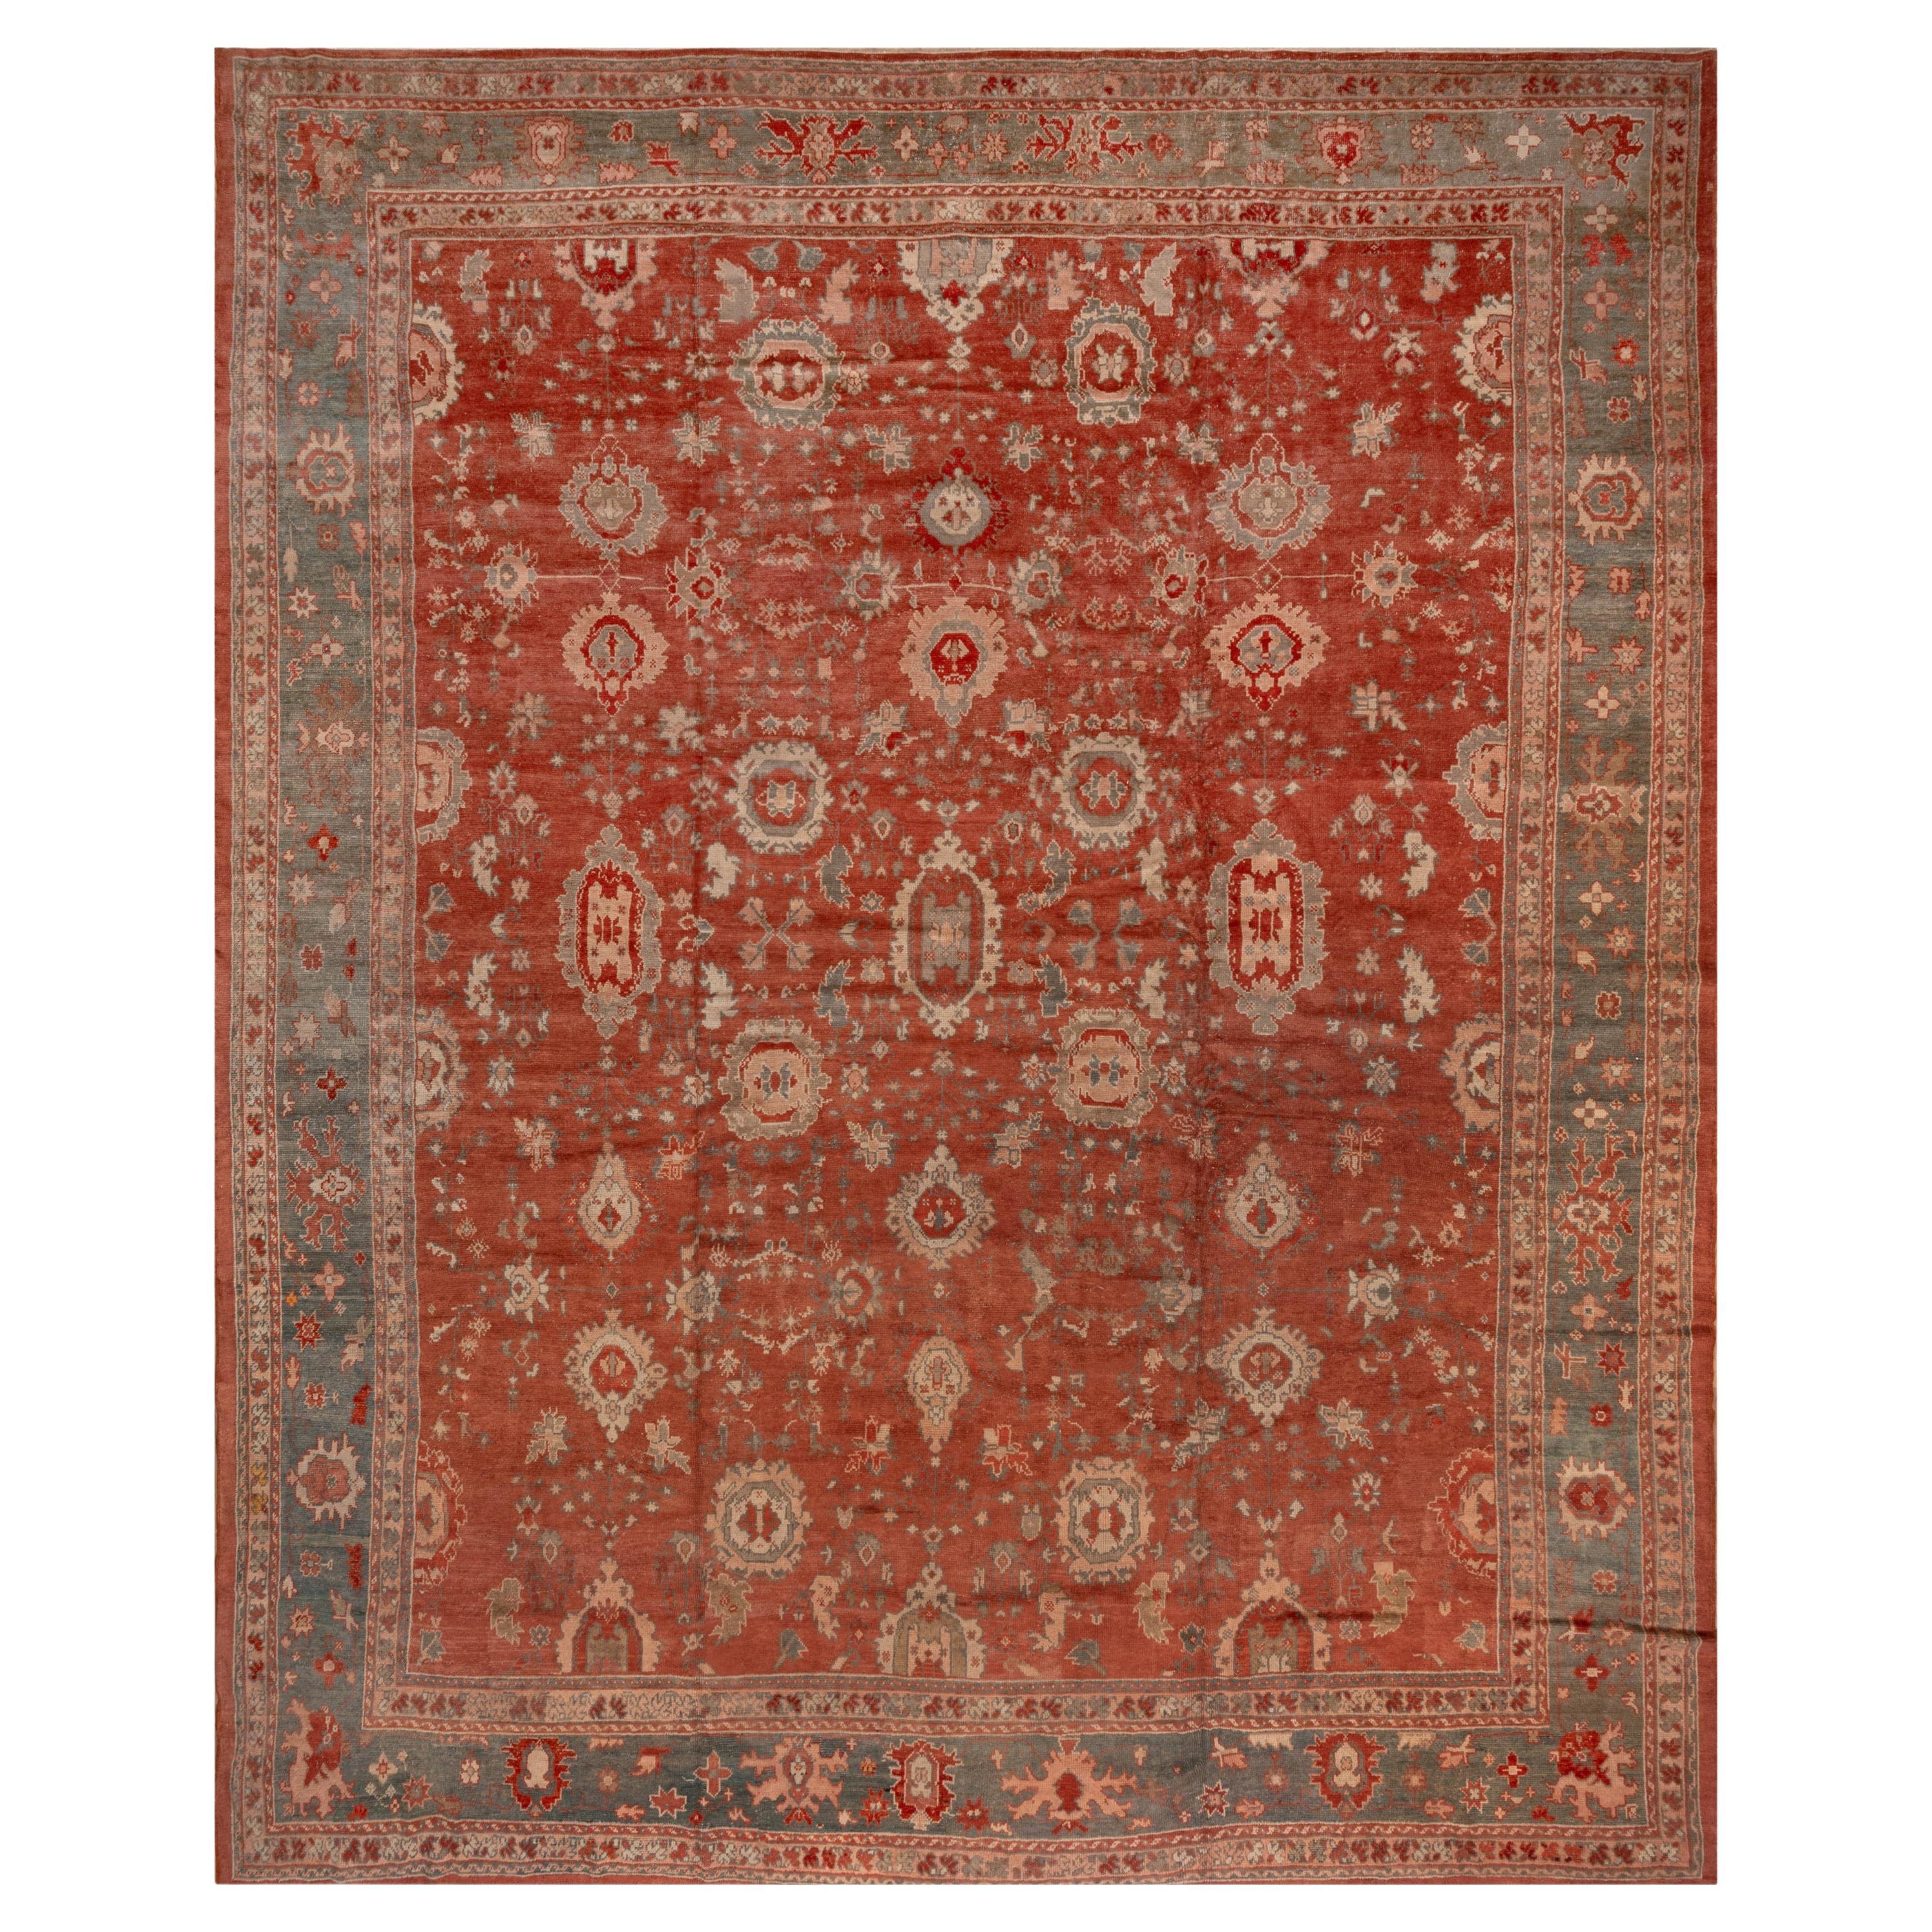 Rare tapis turc ancien d'Oushak des années 1900, fond rouge rouille, bordures vertes